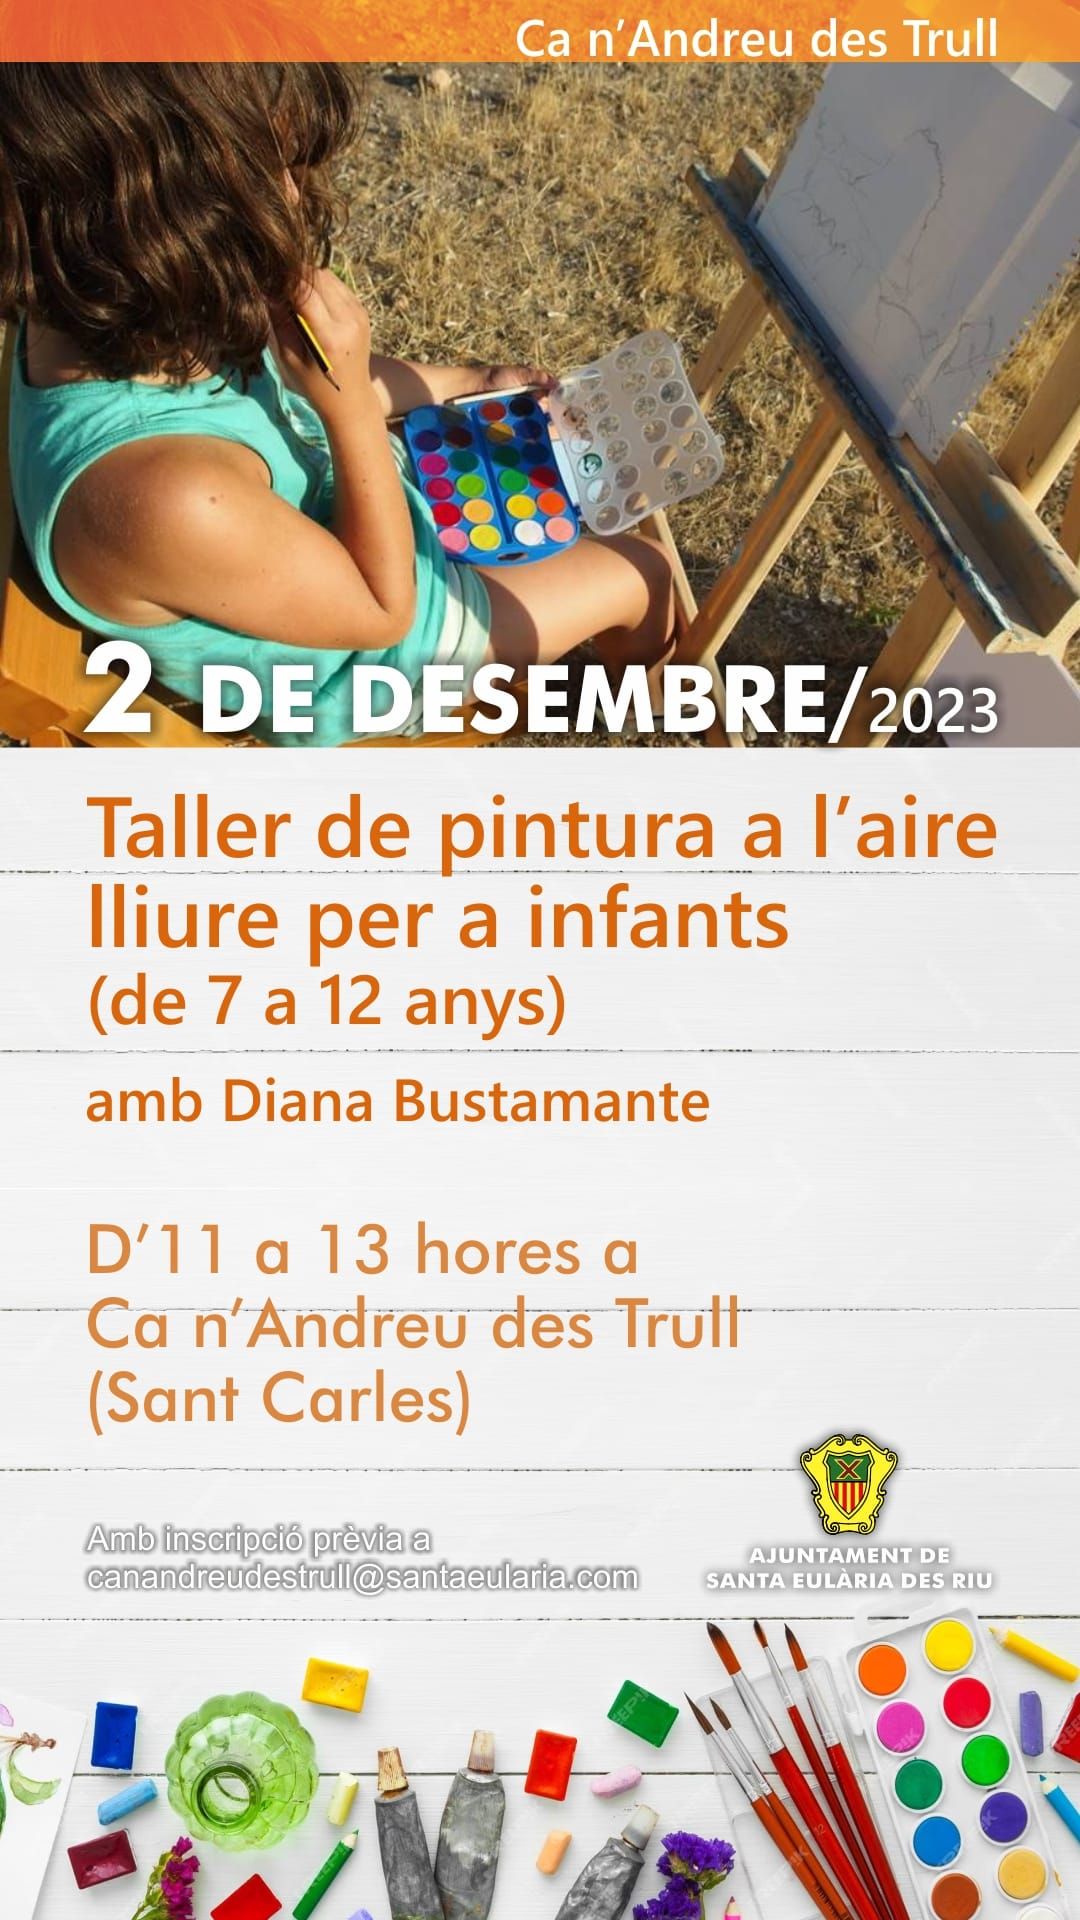 Taller de pintura per a infants a Ca n'Andreu des Trull el 2 de desembre